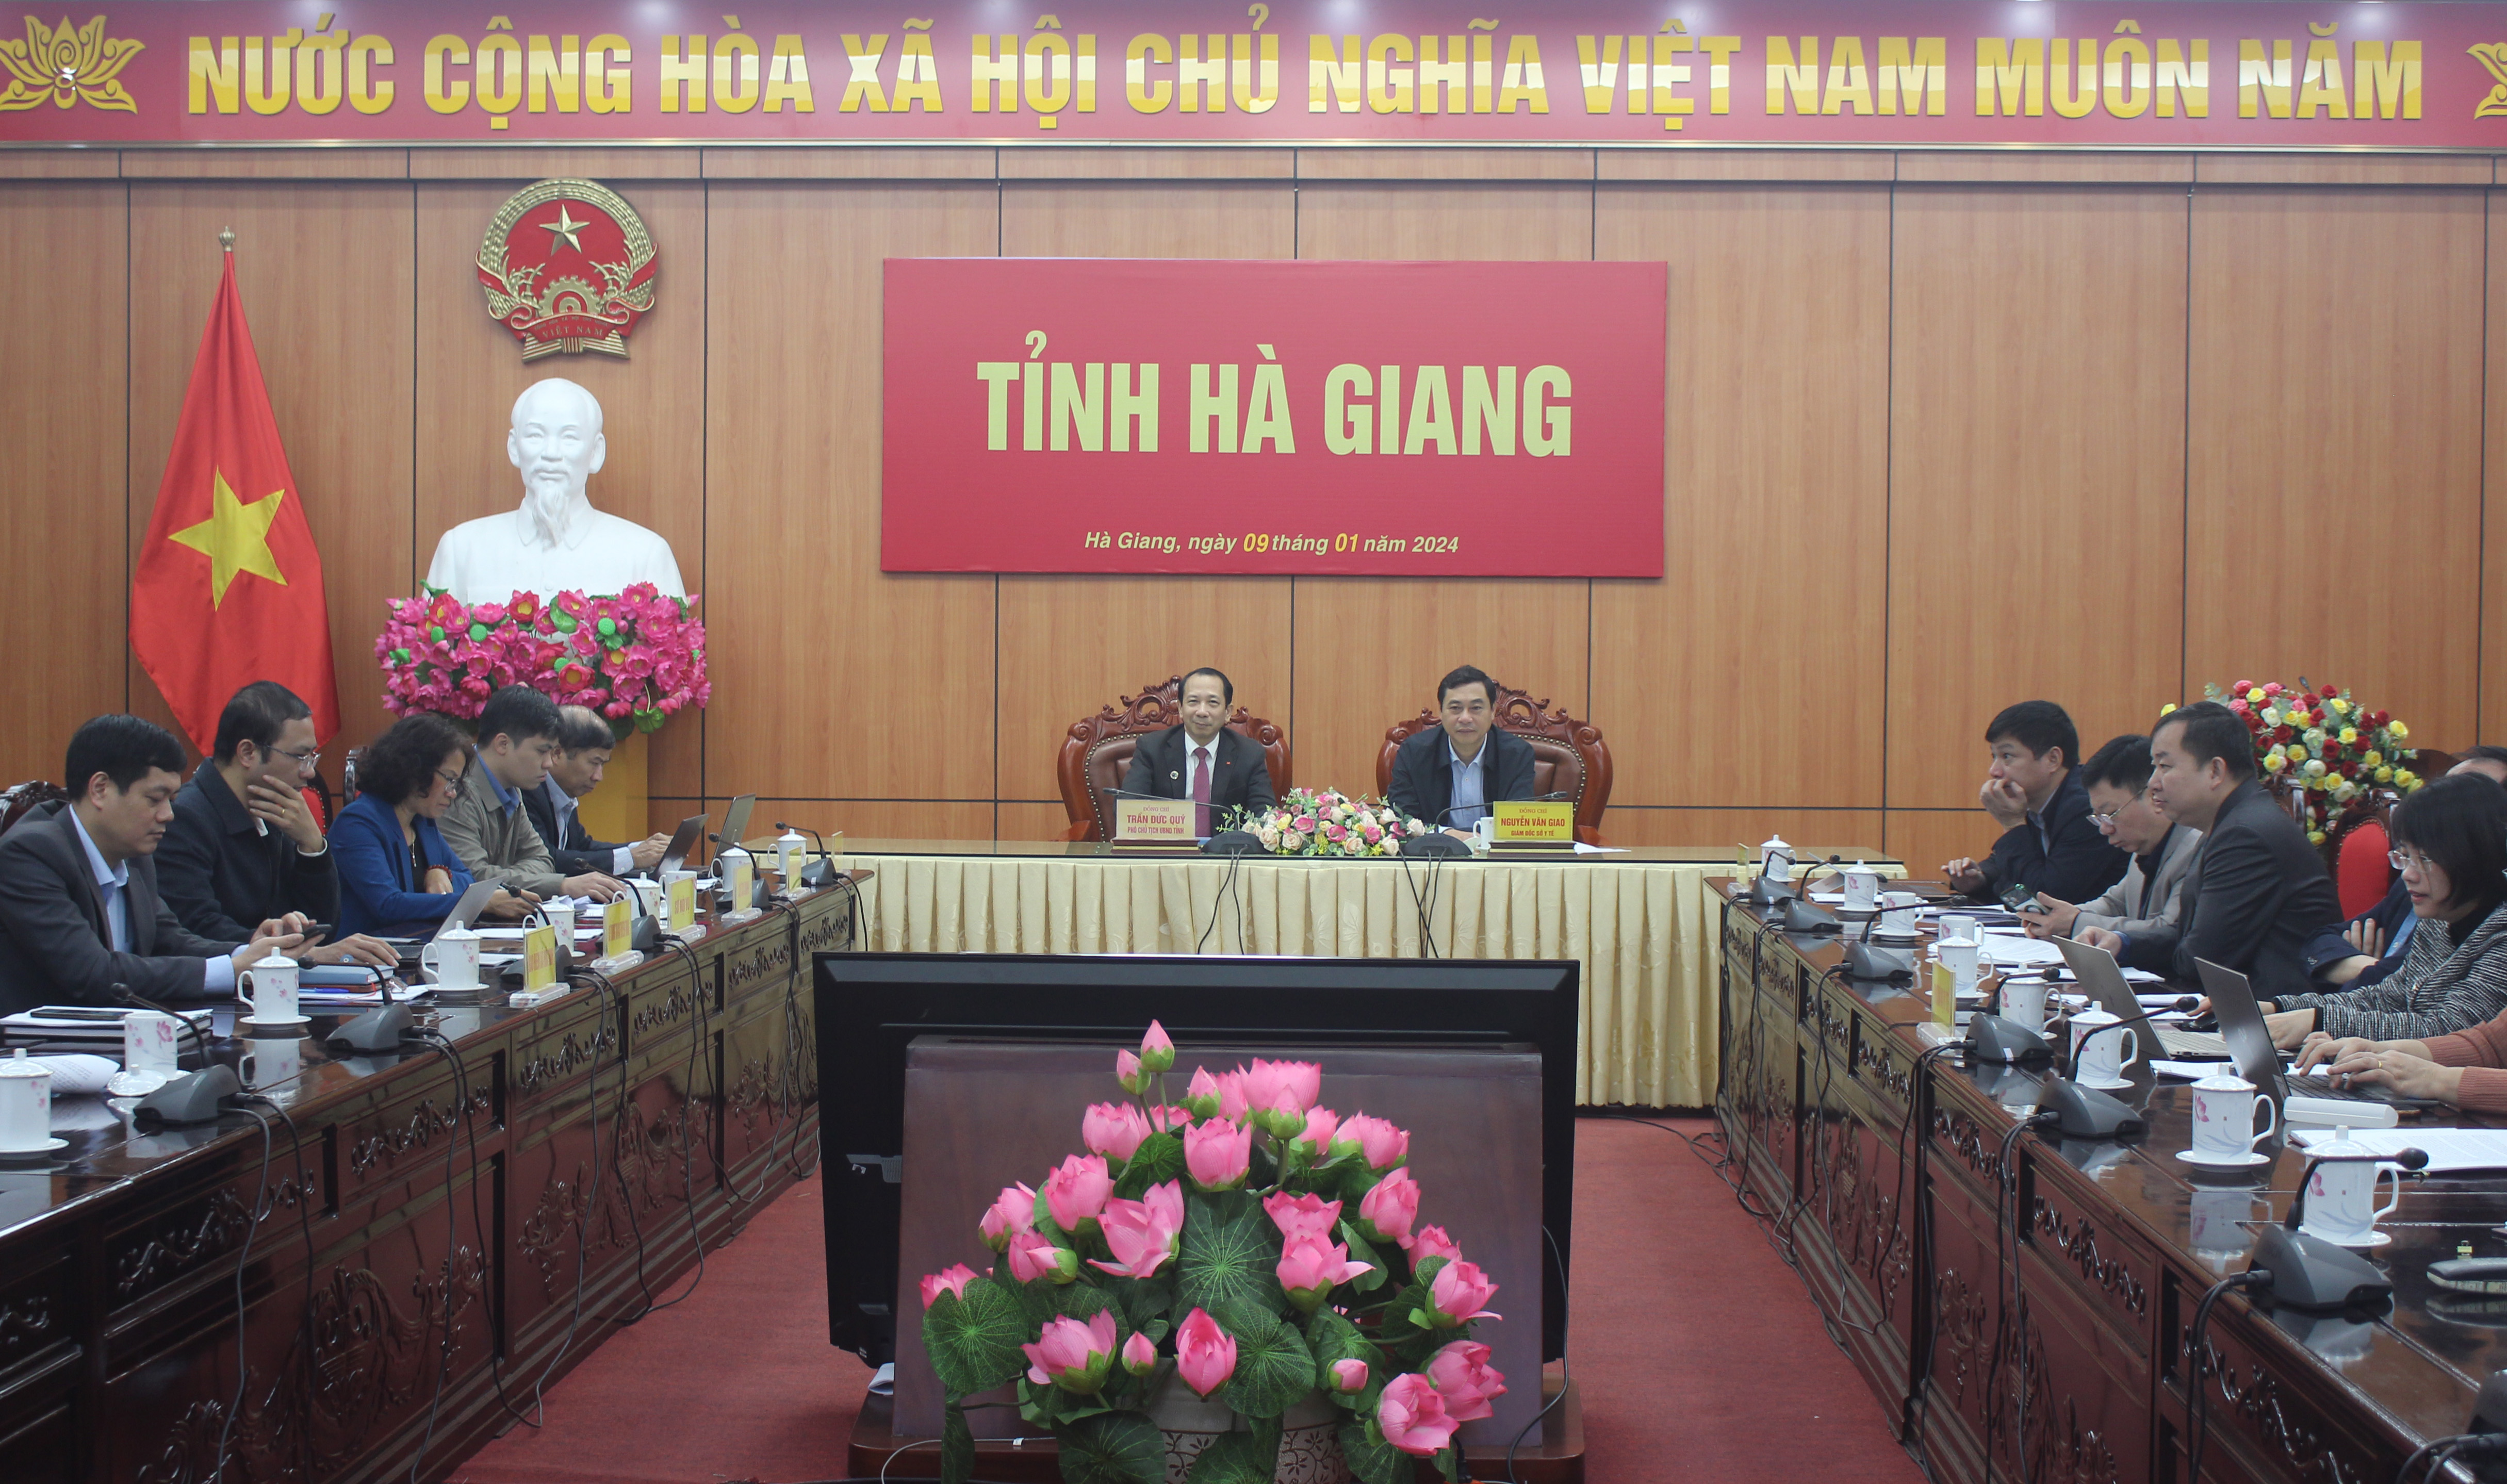 Các đại biểu tham dự Hội nghị tại điểm cầu tỉnh Hà Giang.